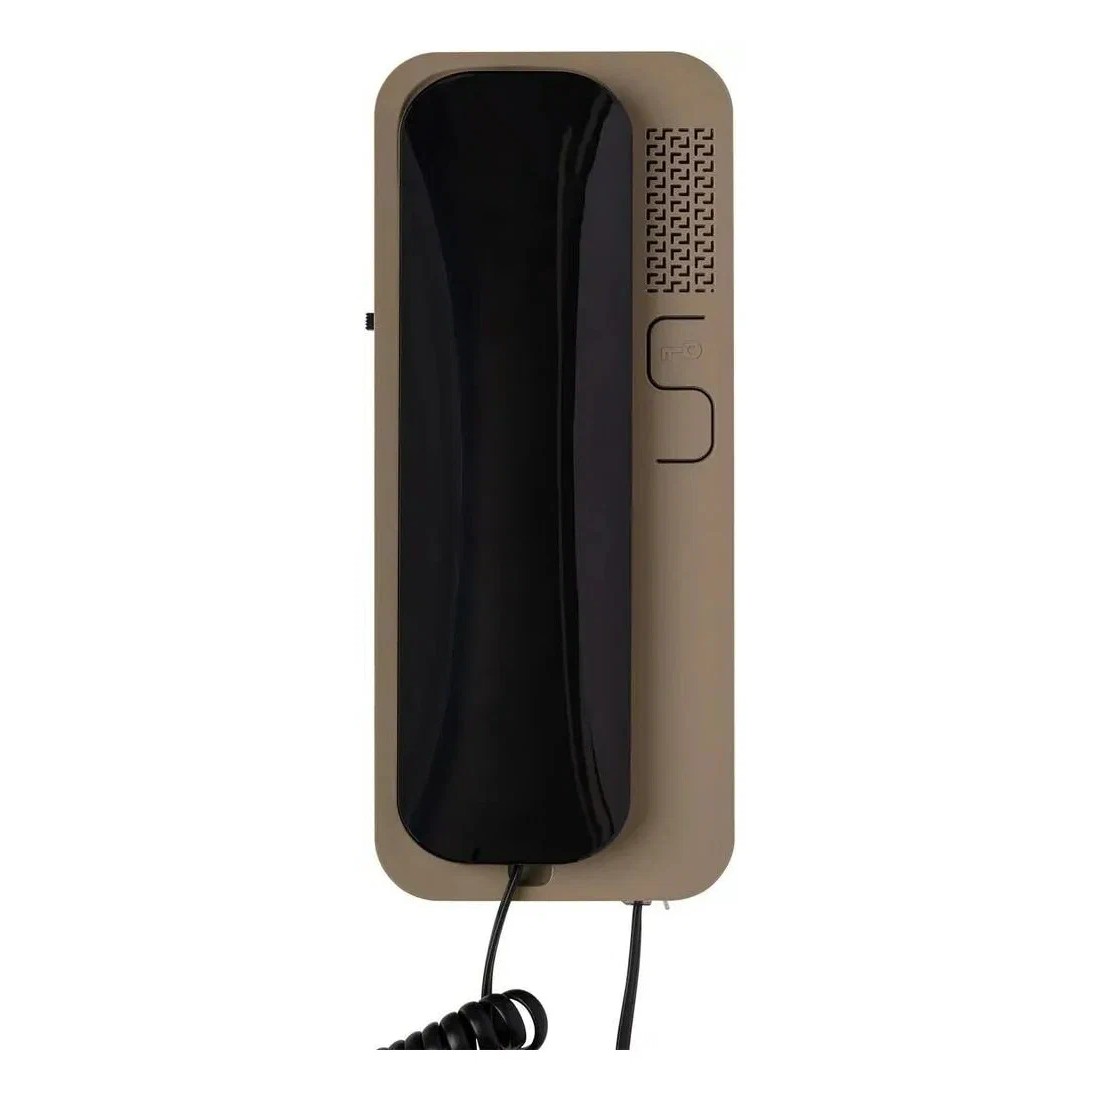 Купить Трубка доомофонная Unifon Smart U чёрно-бежевая CYFRAL                                              